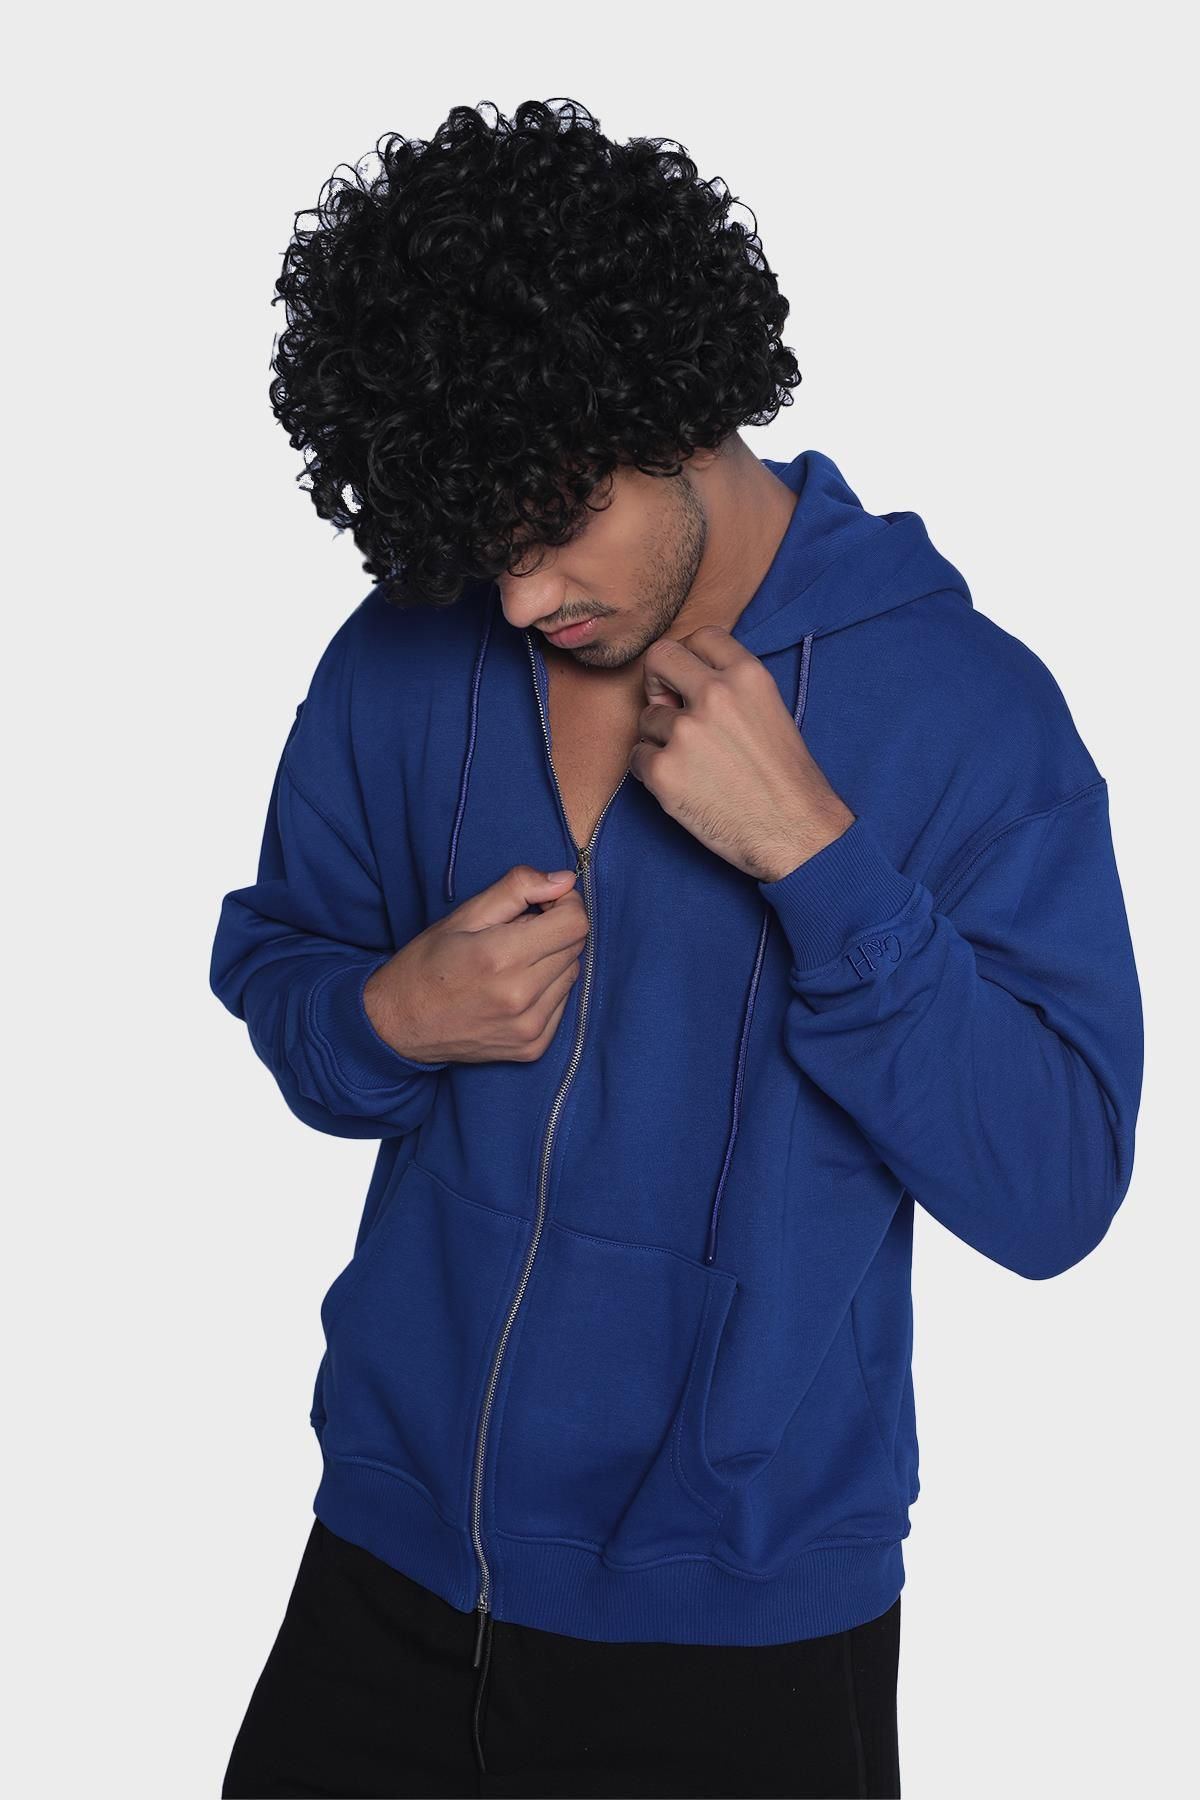 Mens hoodie, long sleeve and zip-up sweatshirt - Sax blue